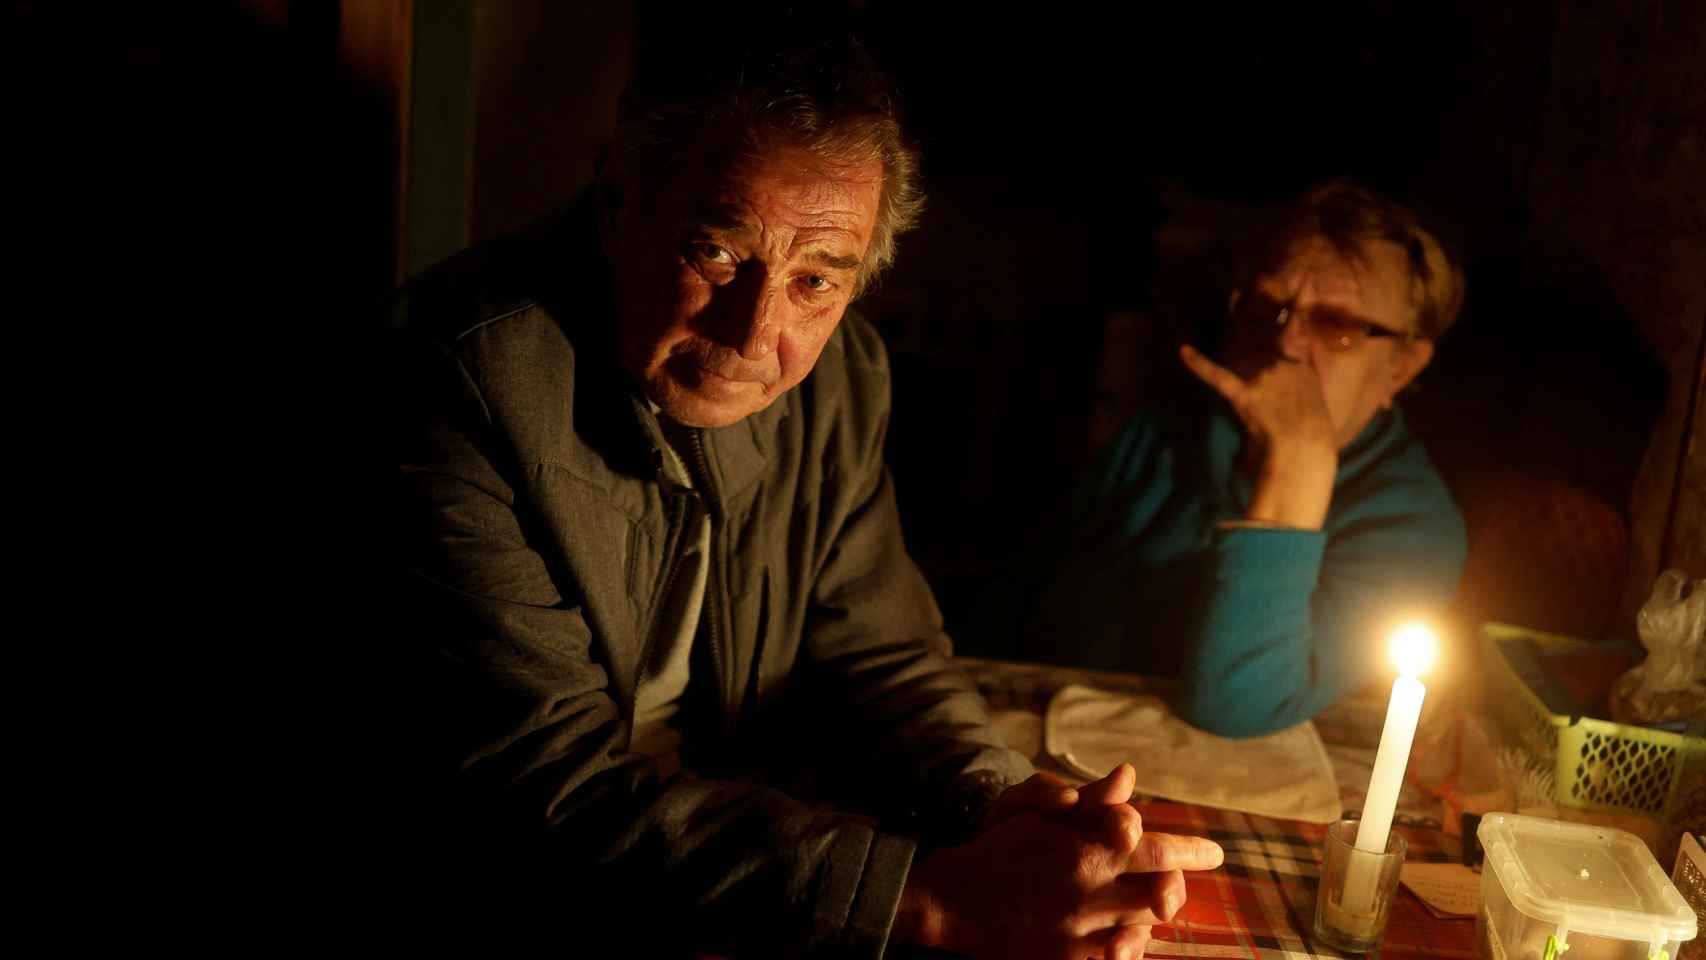 Vitalii Serdiuk, de 65 años, quien dice que fue torturado por miembros del servicio ruso, y su esposa Olena hablan durante una entrevista con Reuters después de la retirada de Rusia de Kherson , Ucrania, el 15 de noviembre de 2022. REUTERS/Valentyn Ogirenko